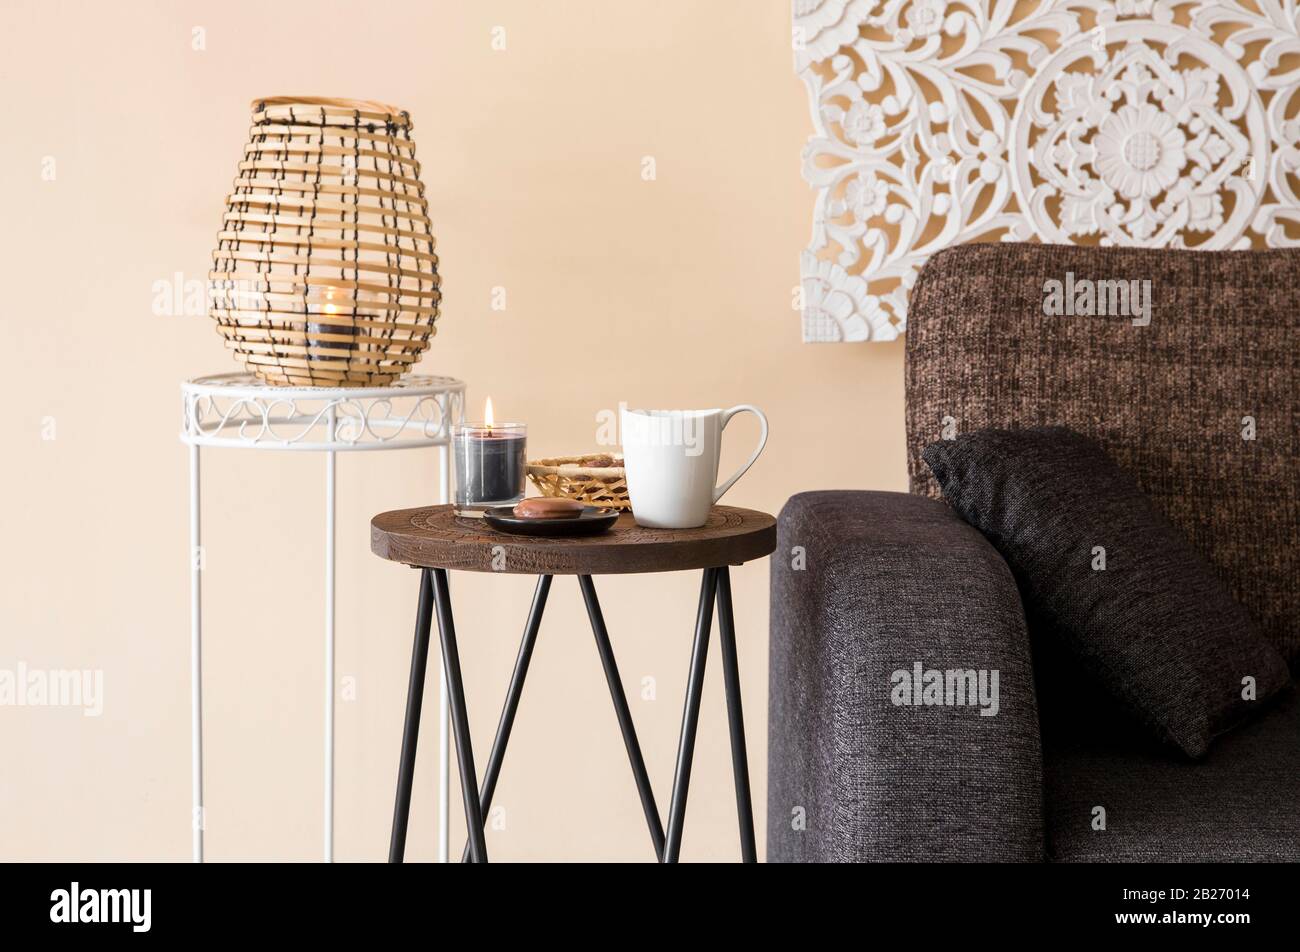 Modernes, minimalistisches Wohnzimmer mit dekorativen Elementen im asiatischen Stil. Geschnitzte Wandtafel, Bambuskerze Laterne, kleiner Holzseitentisch. Stockfoto